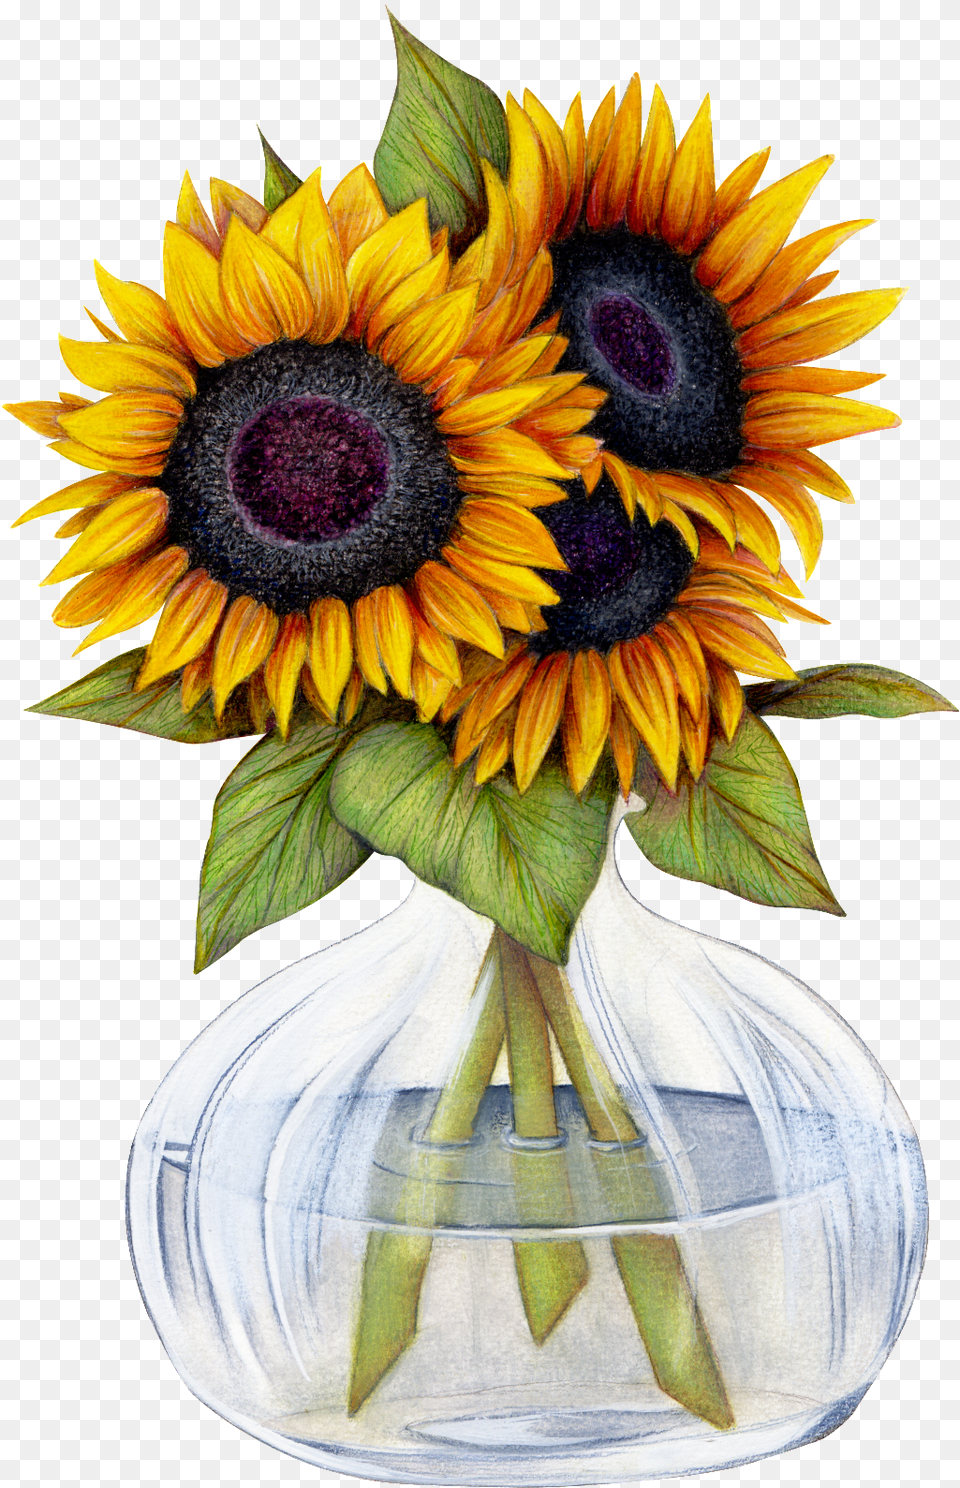 Beautiful Sunflower Flower Transparent Want Sunflowers Pics Clip Art, Flower Arrangement, Plant, Flower Bouquet, Jar Png Image